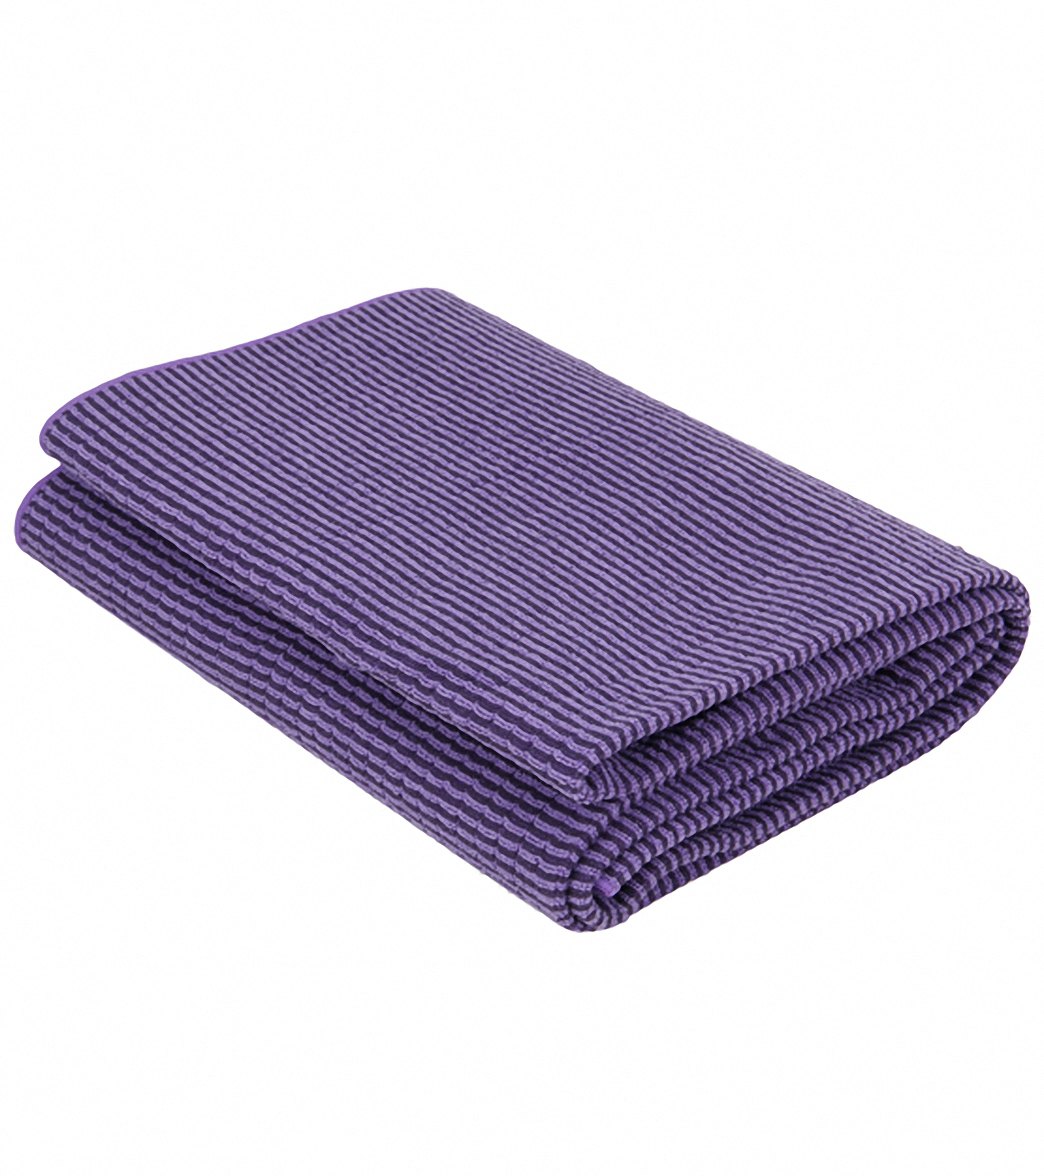 Brilliant Purple Non-Slip Yoga Mat Cover Microfiber Towel with